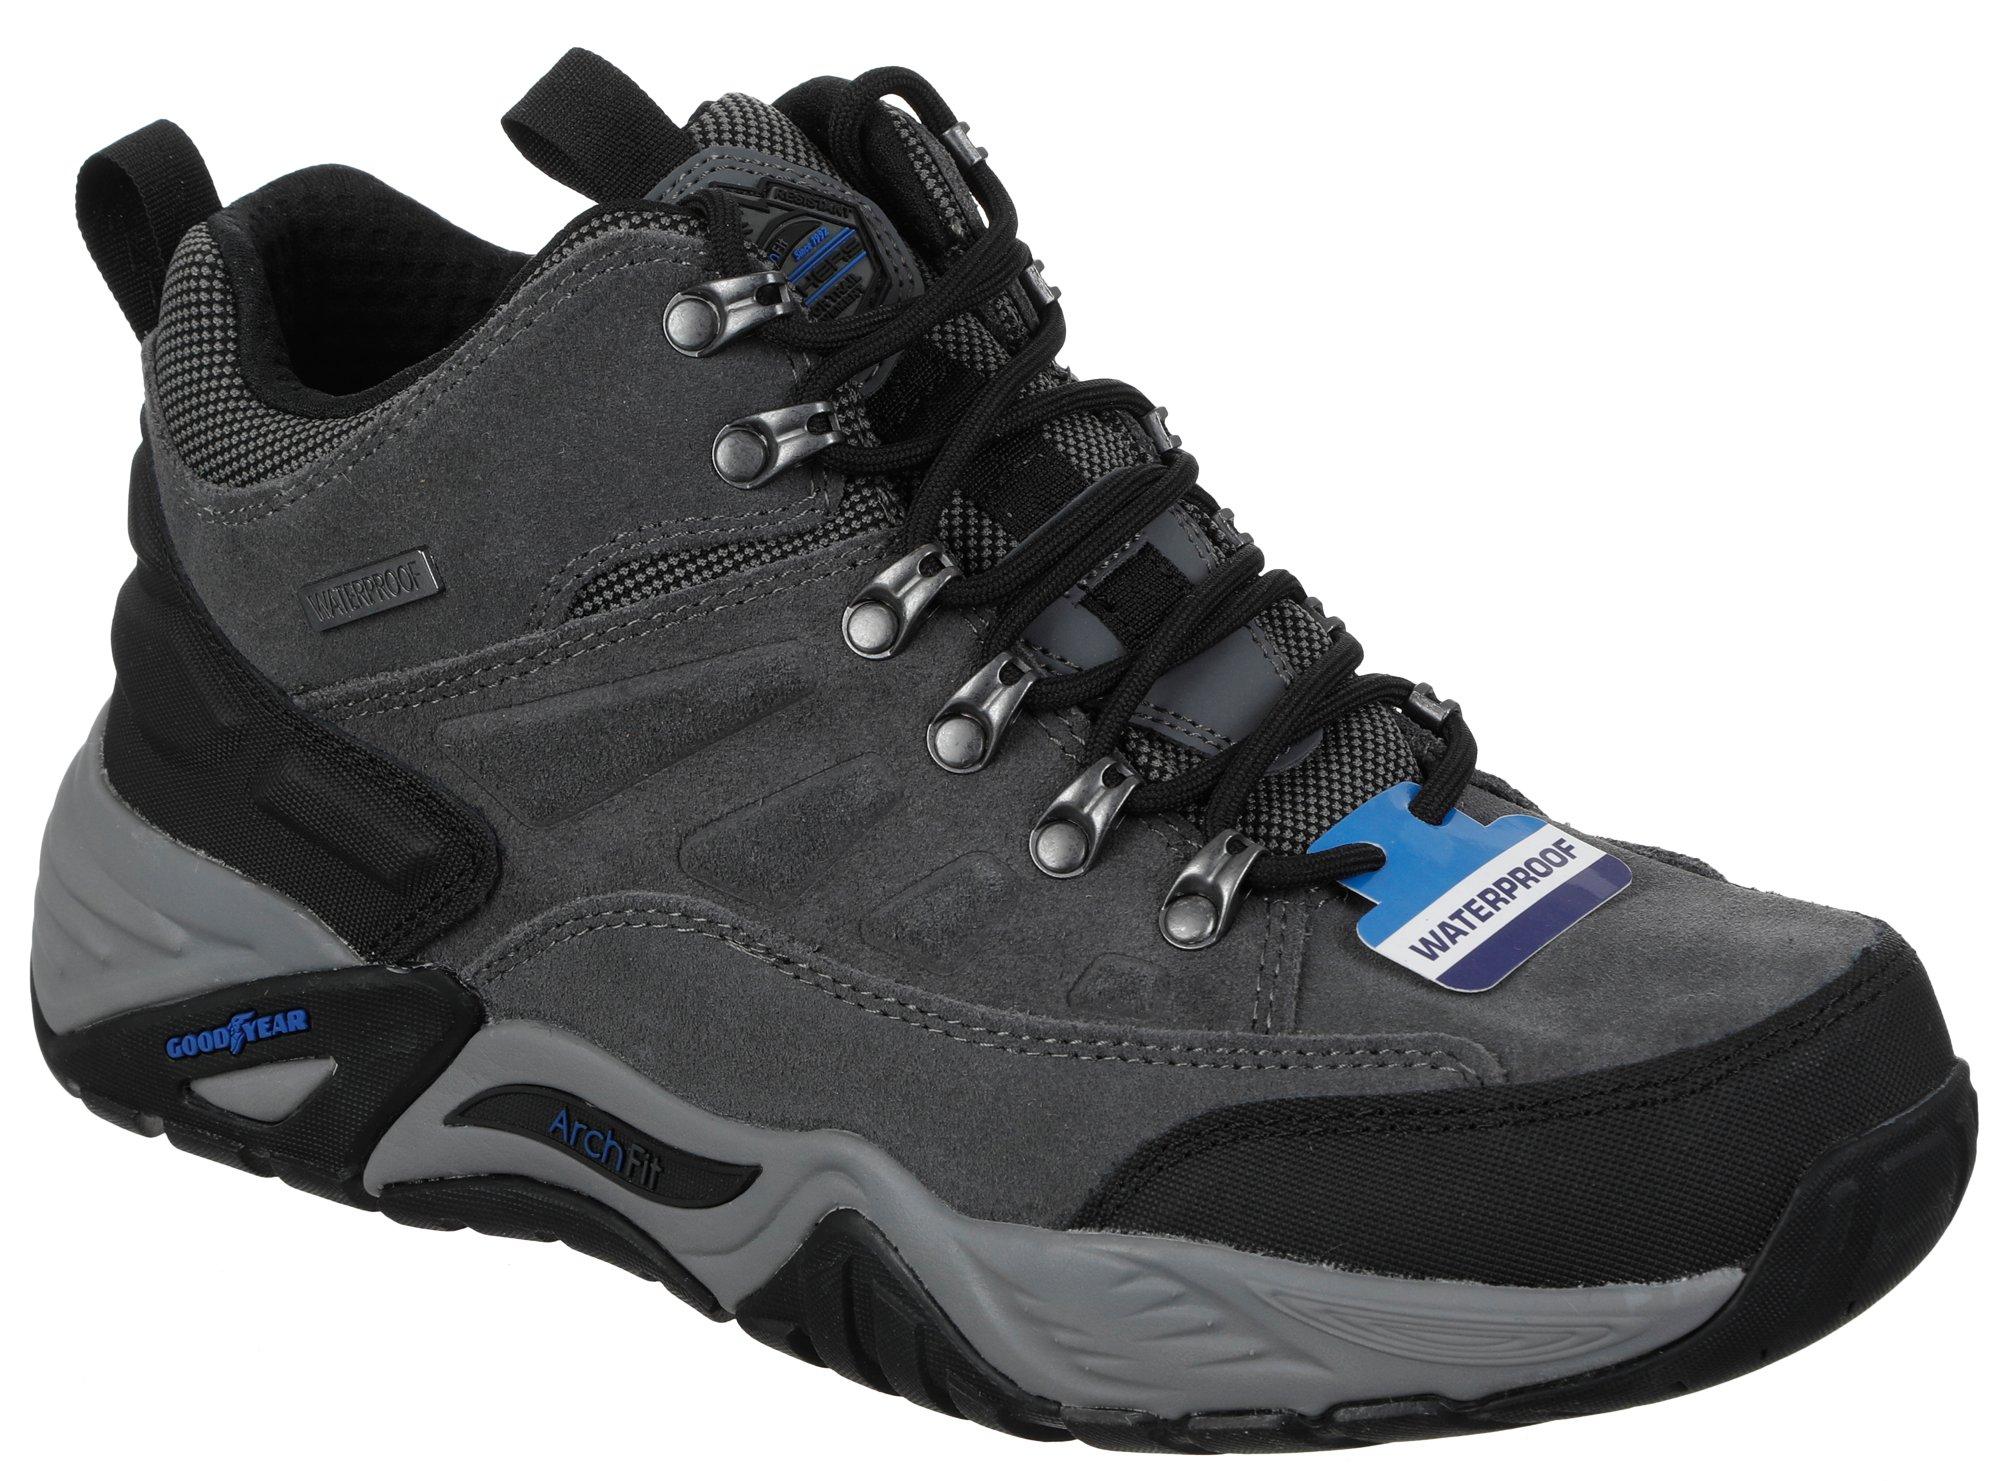 Men's Waterproof Outdoor Hiking Boots - Black